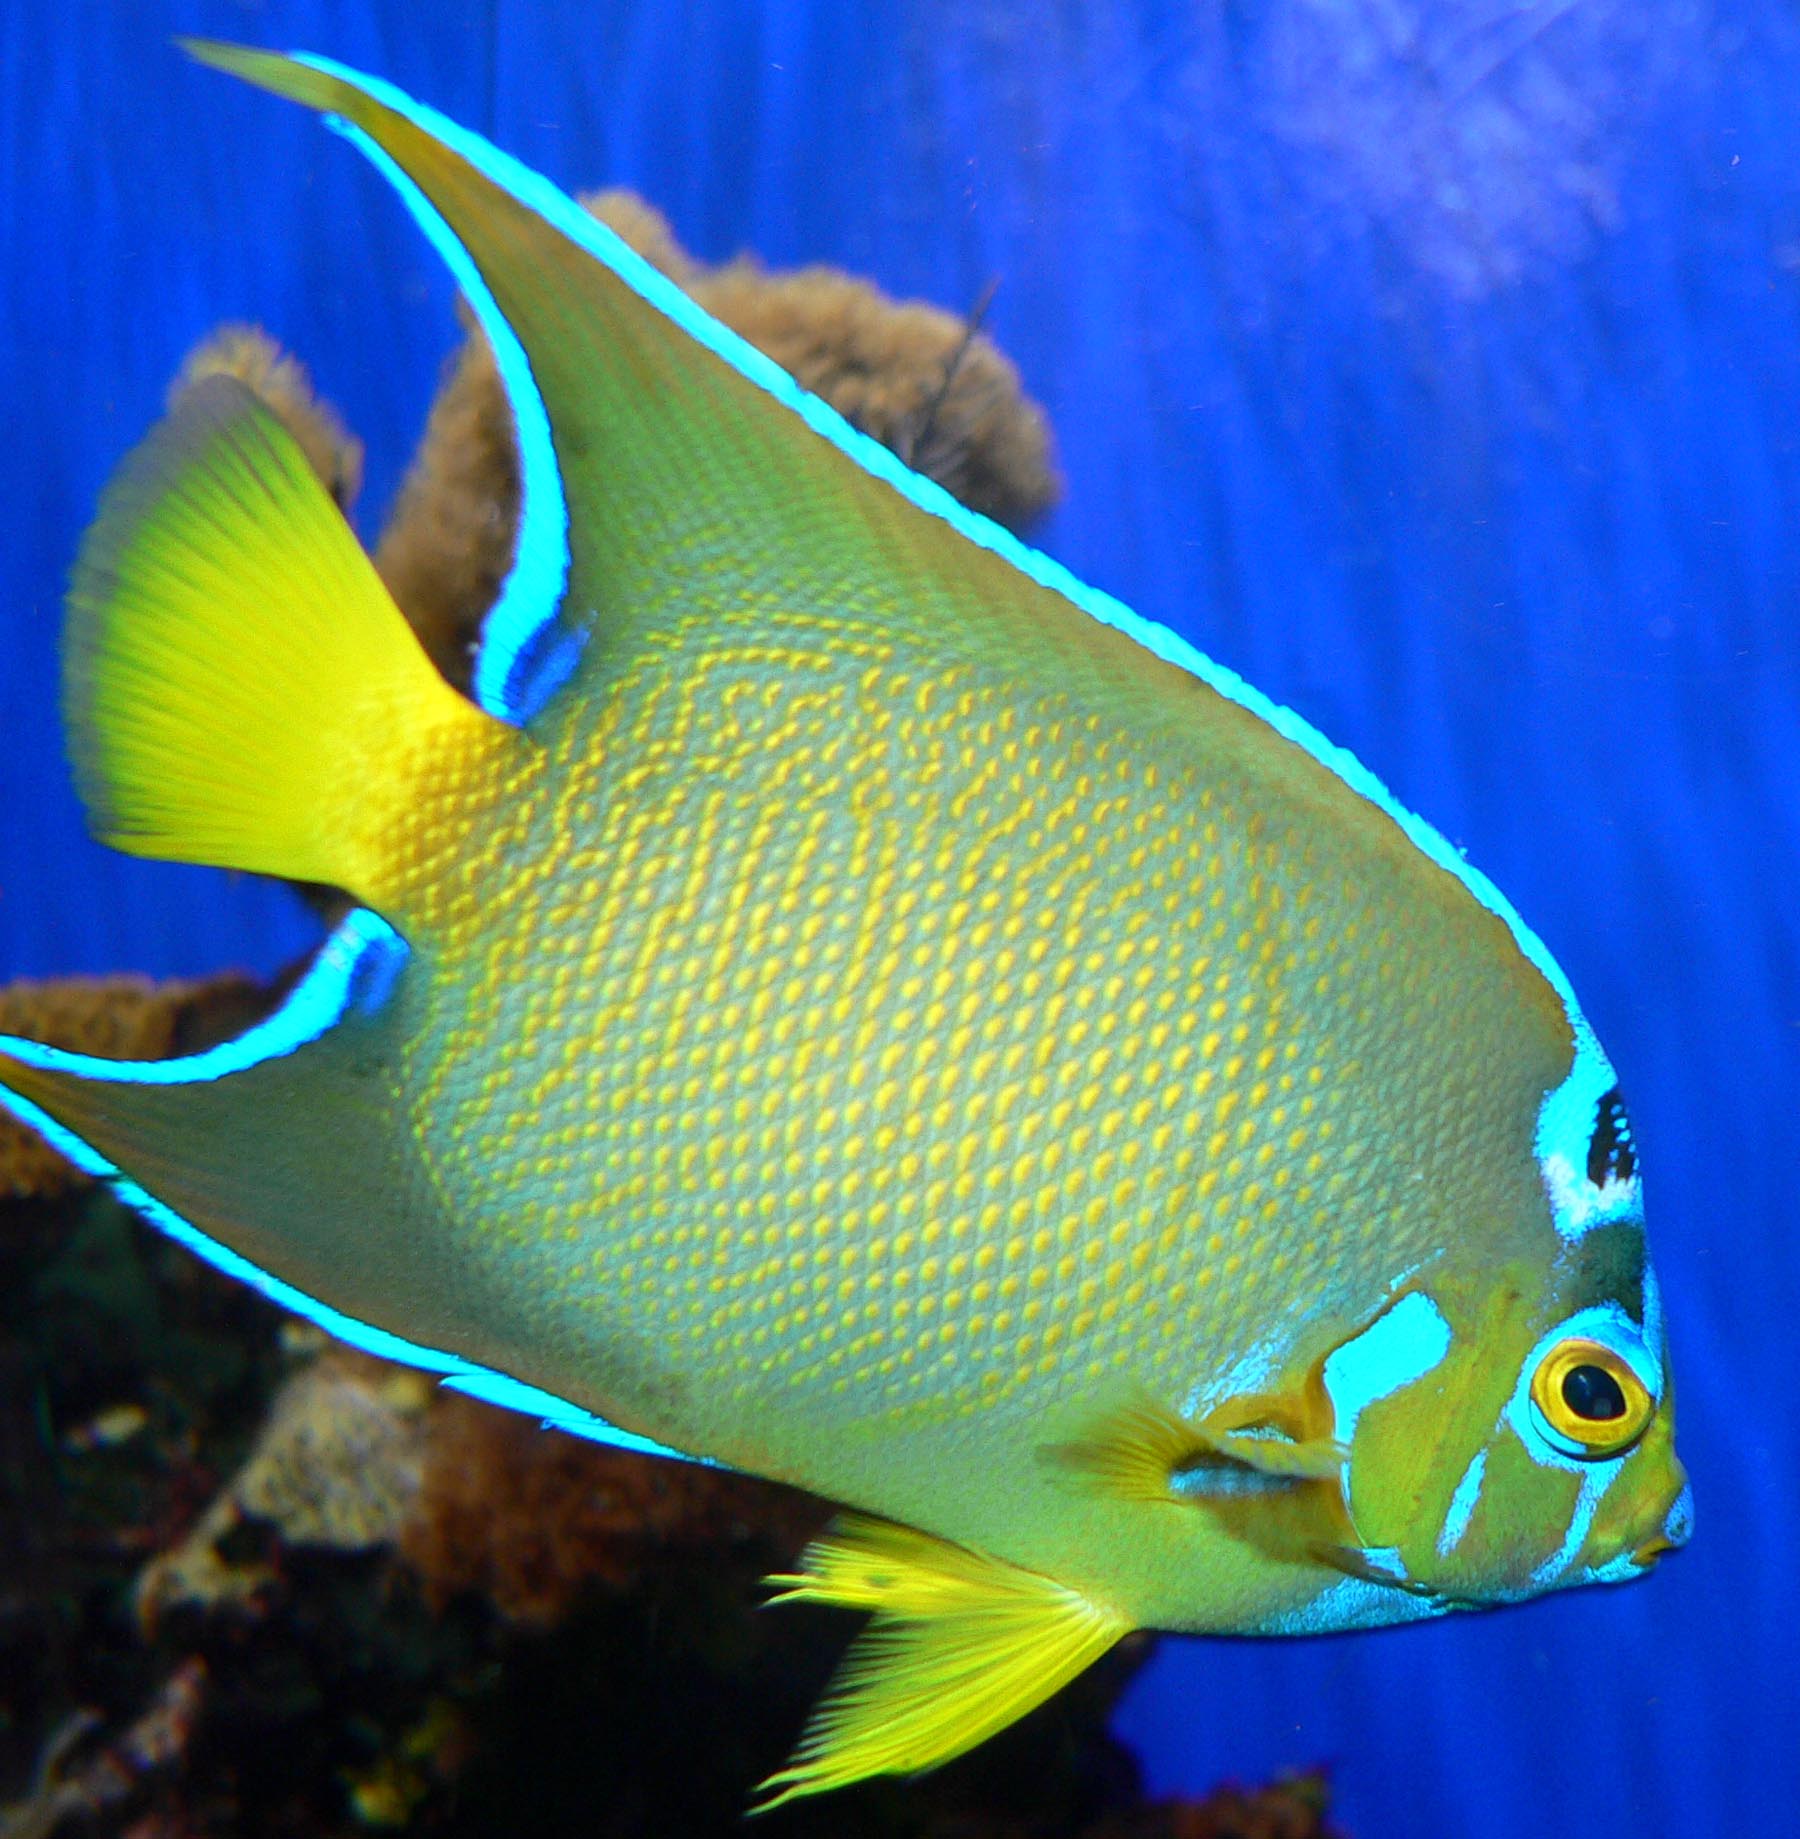 Pesce giallo e azzurro